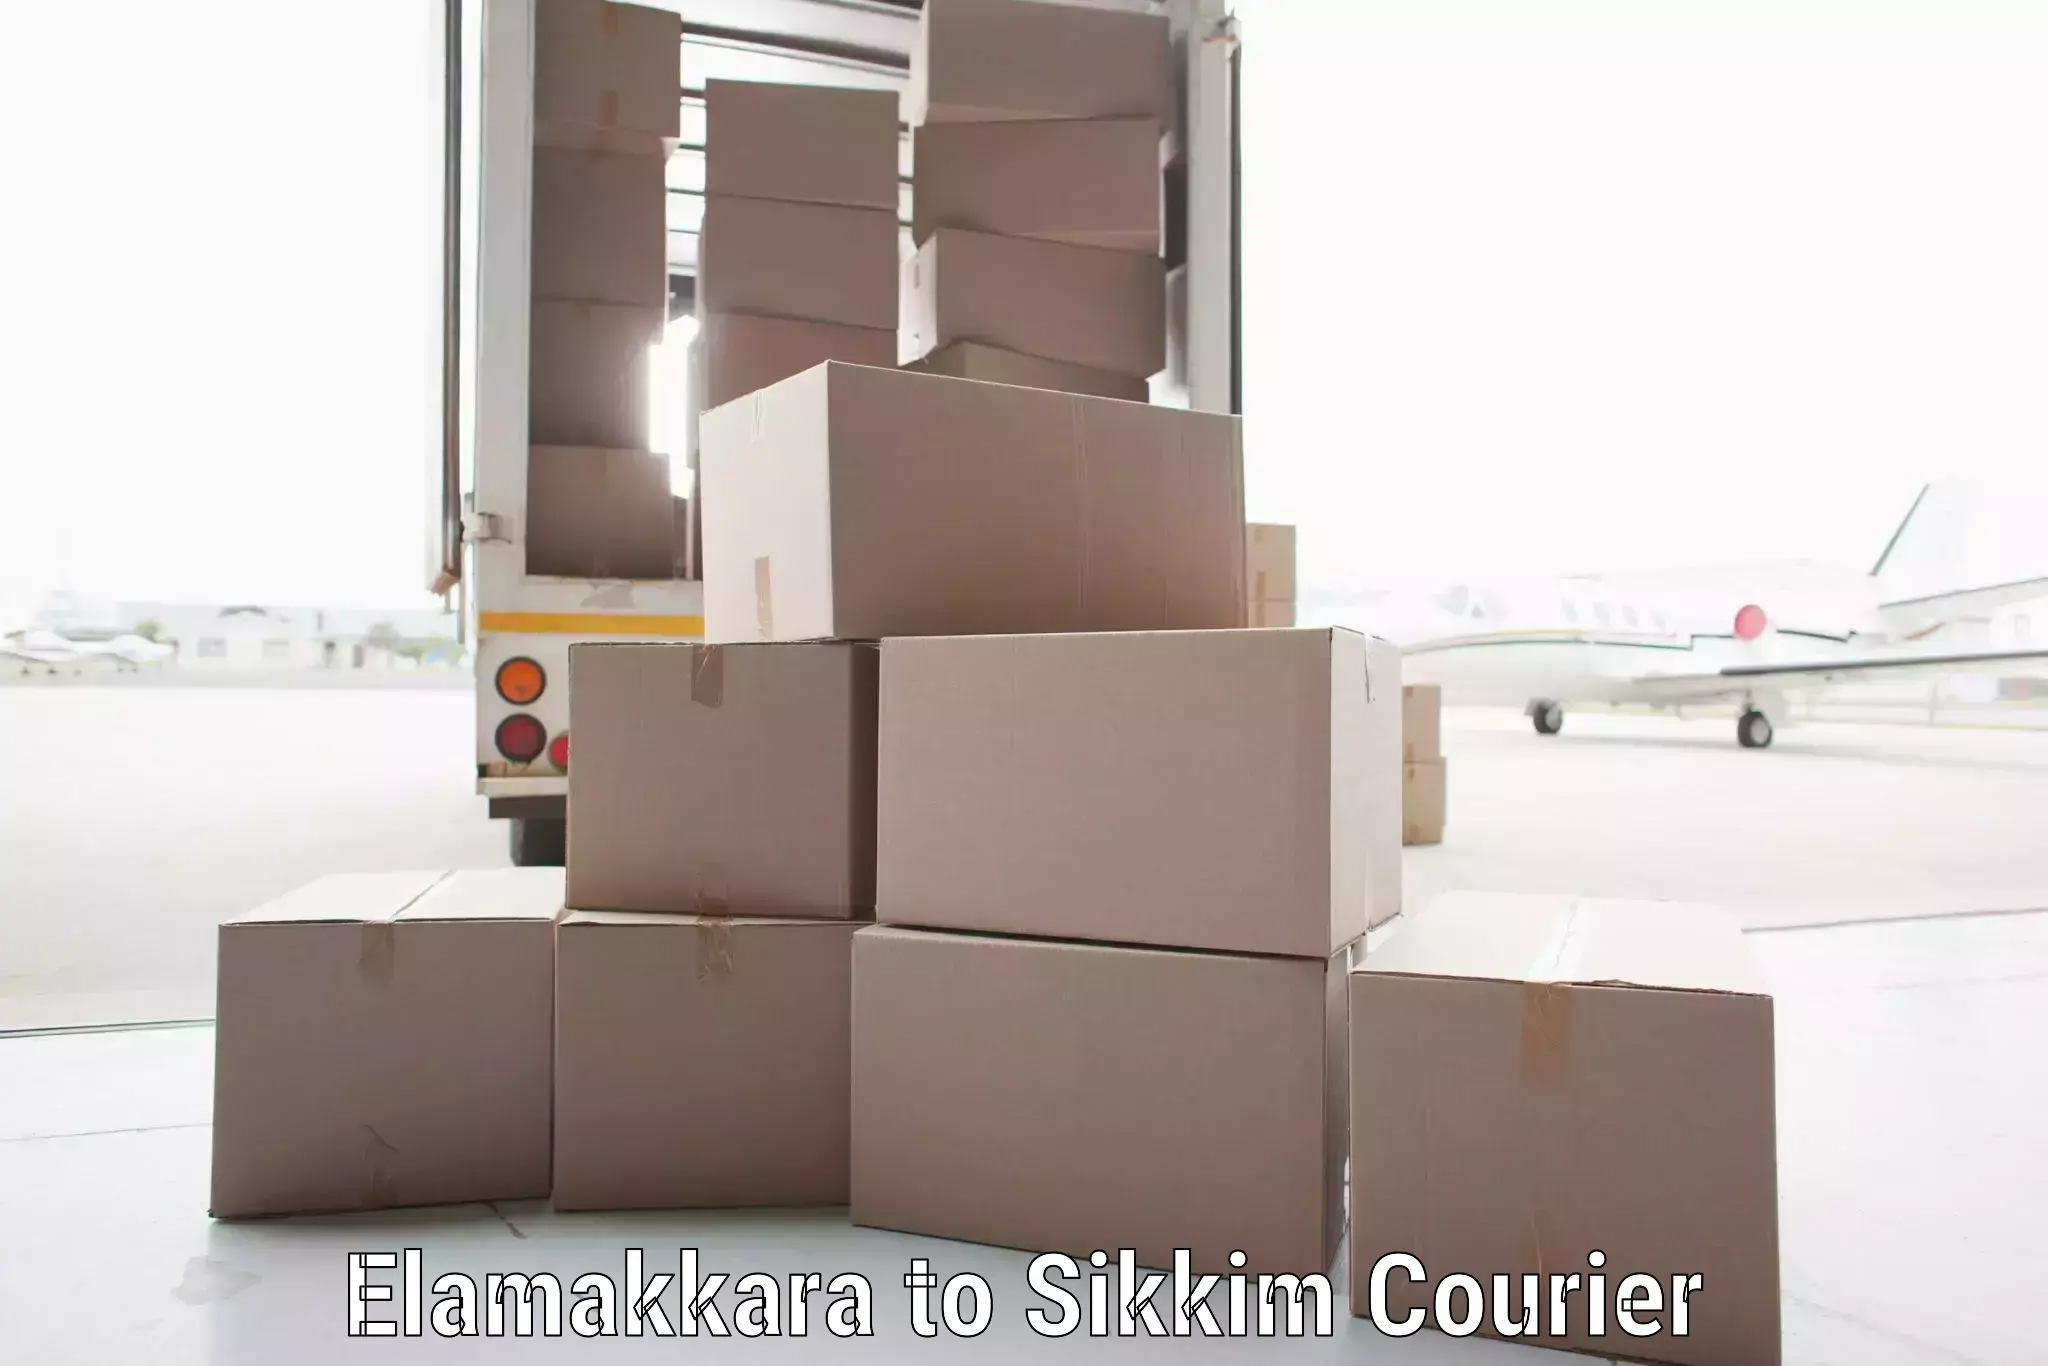 Courier service partnerships Elamakkara to Sikkim